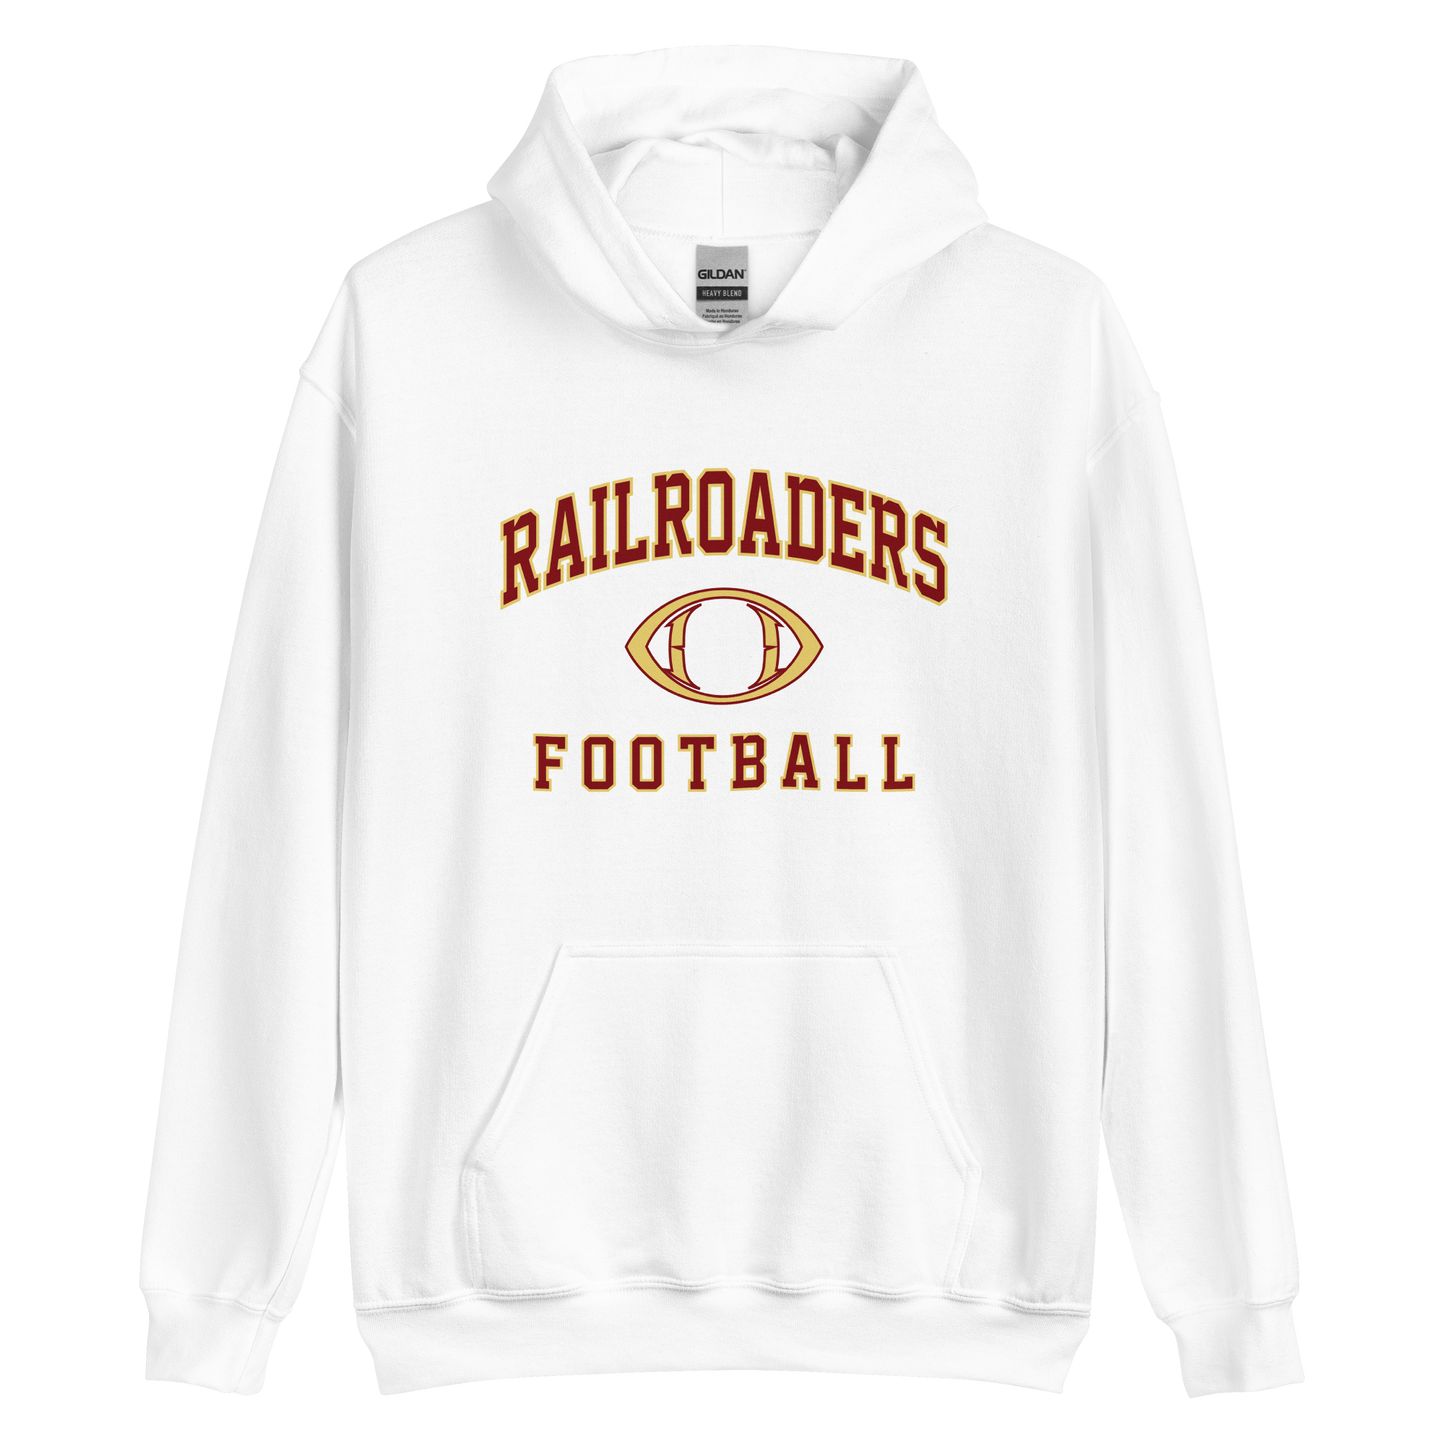 Railroaders Football Unisex Hoodie